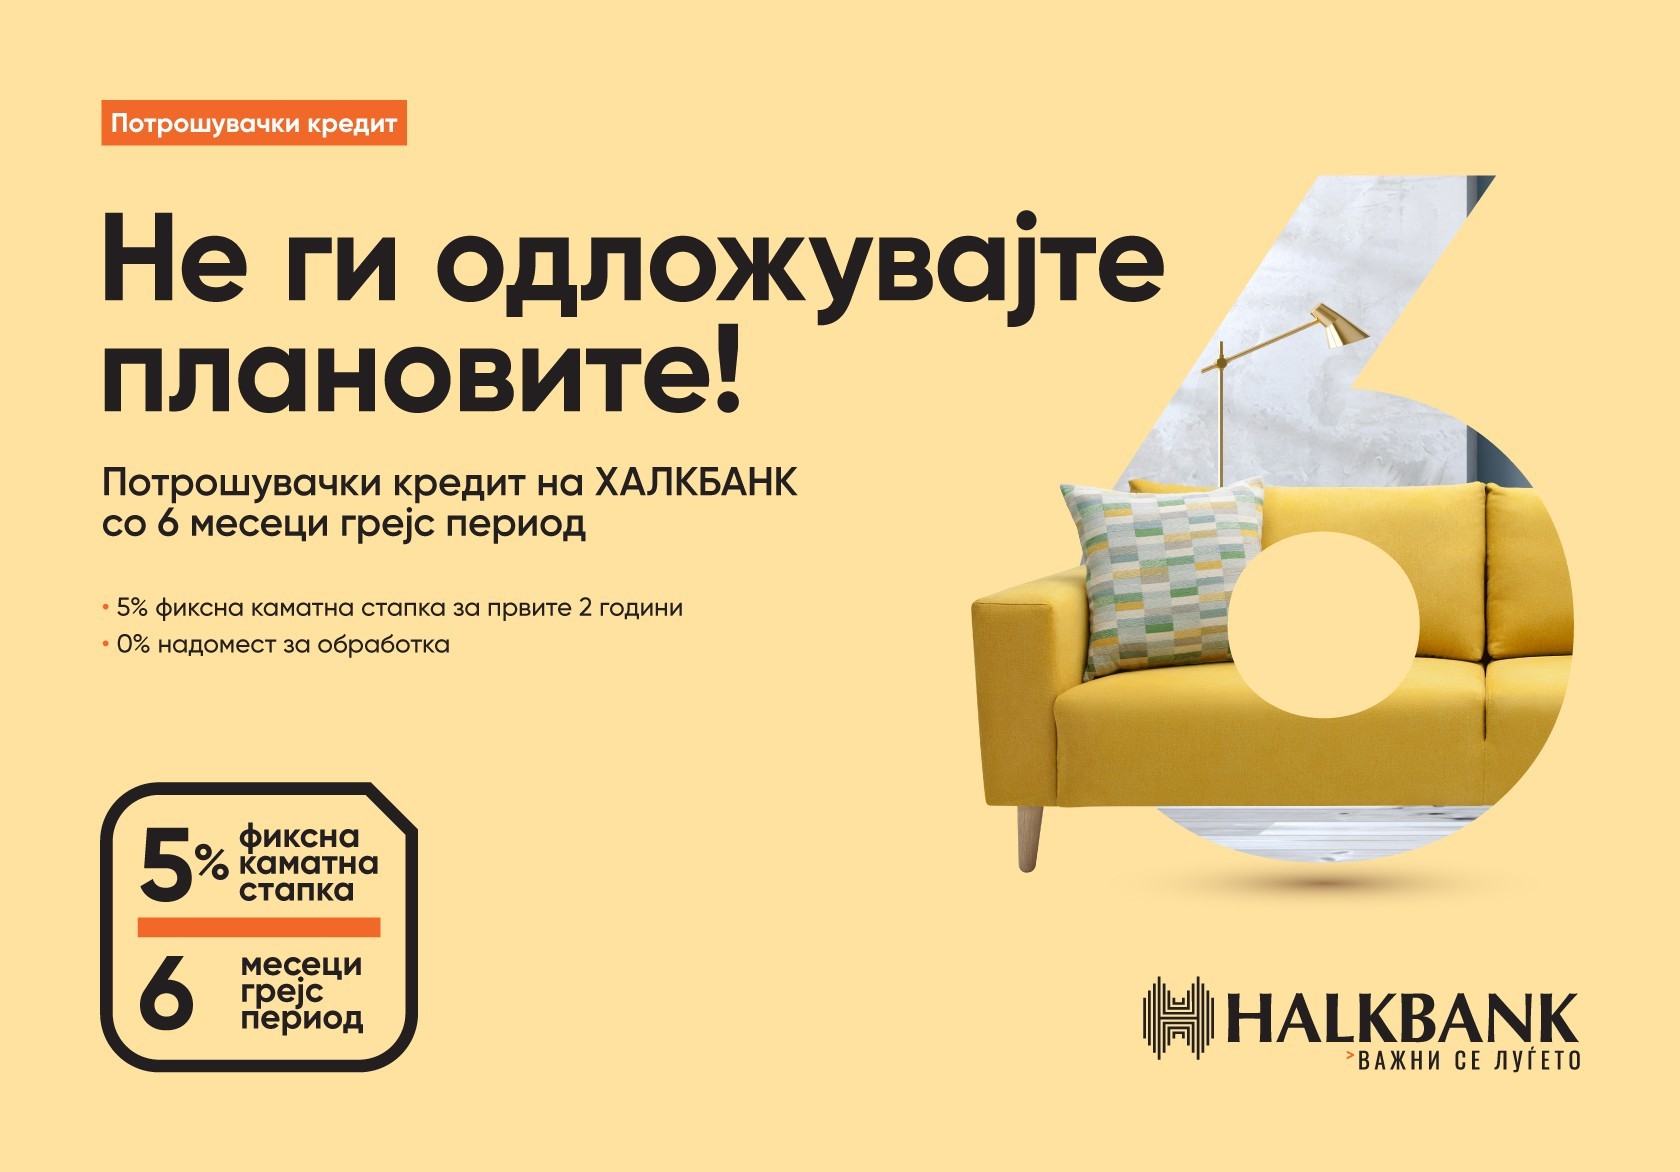 Олеснување за клиентите: Нов потрошувачки кредит од Халкбанк со 6 месеци грејс период